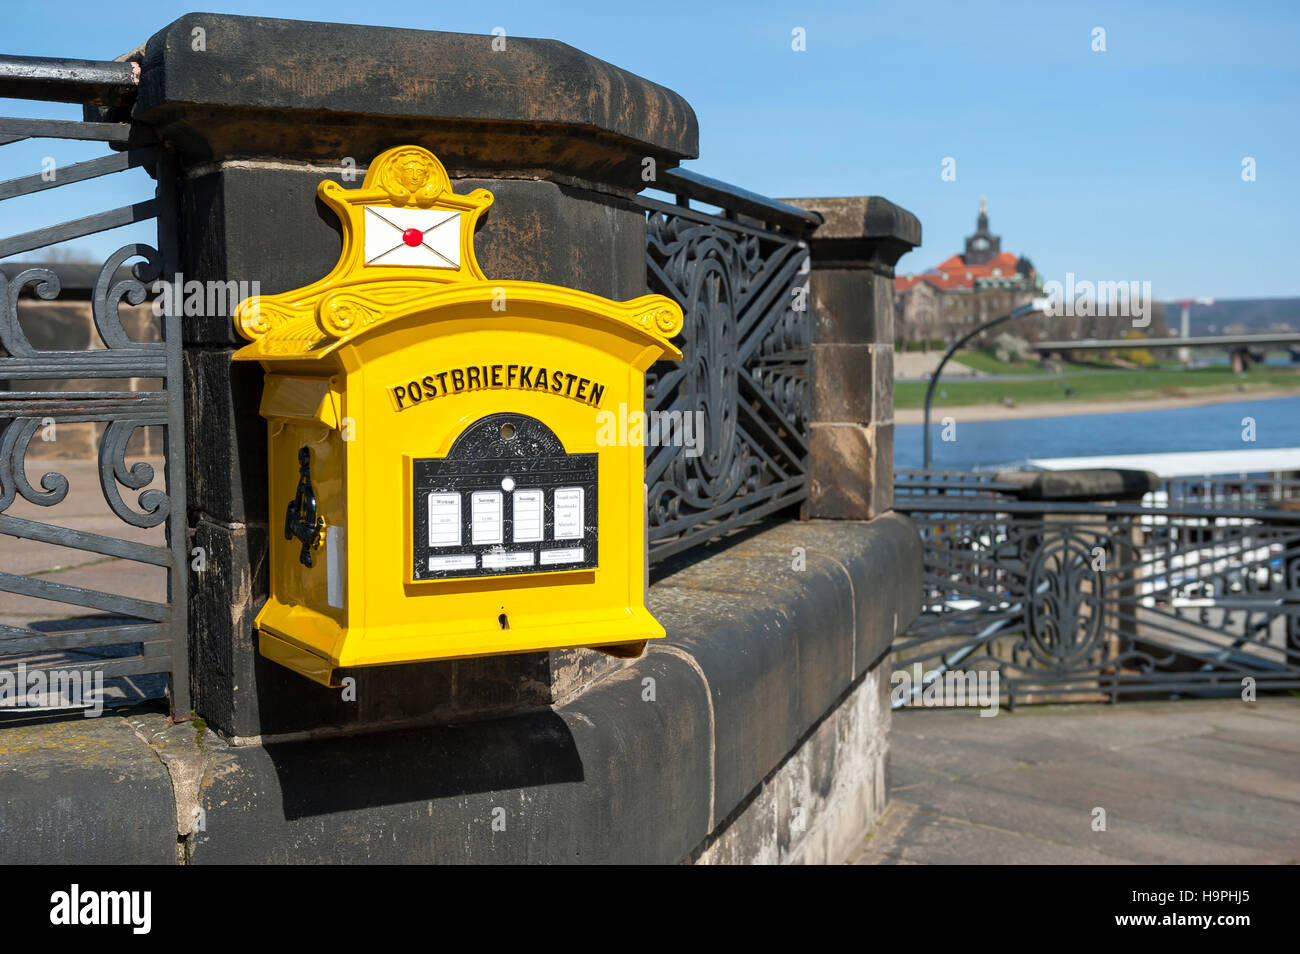 Briefkasten, Dresden, Sachsen, Deutschland, Europa Stockfotografie - Alamy